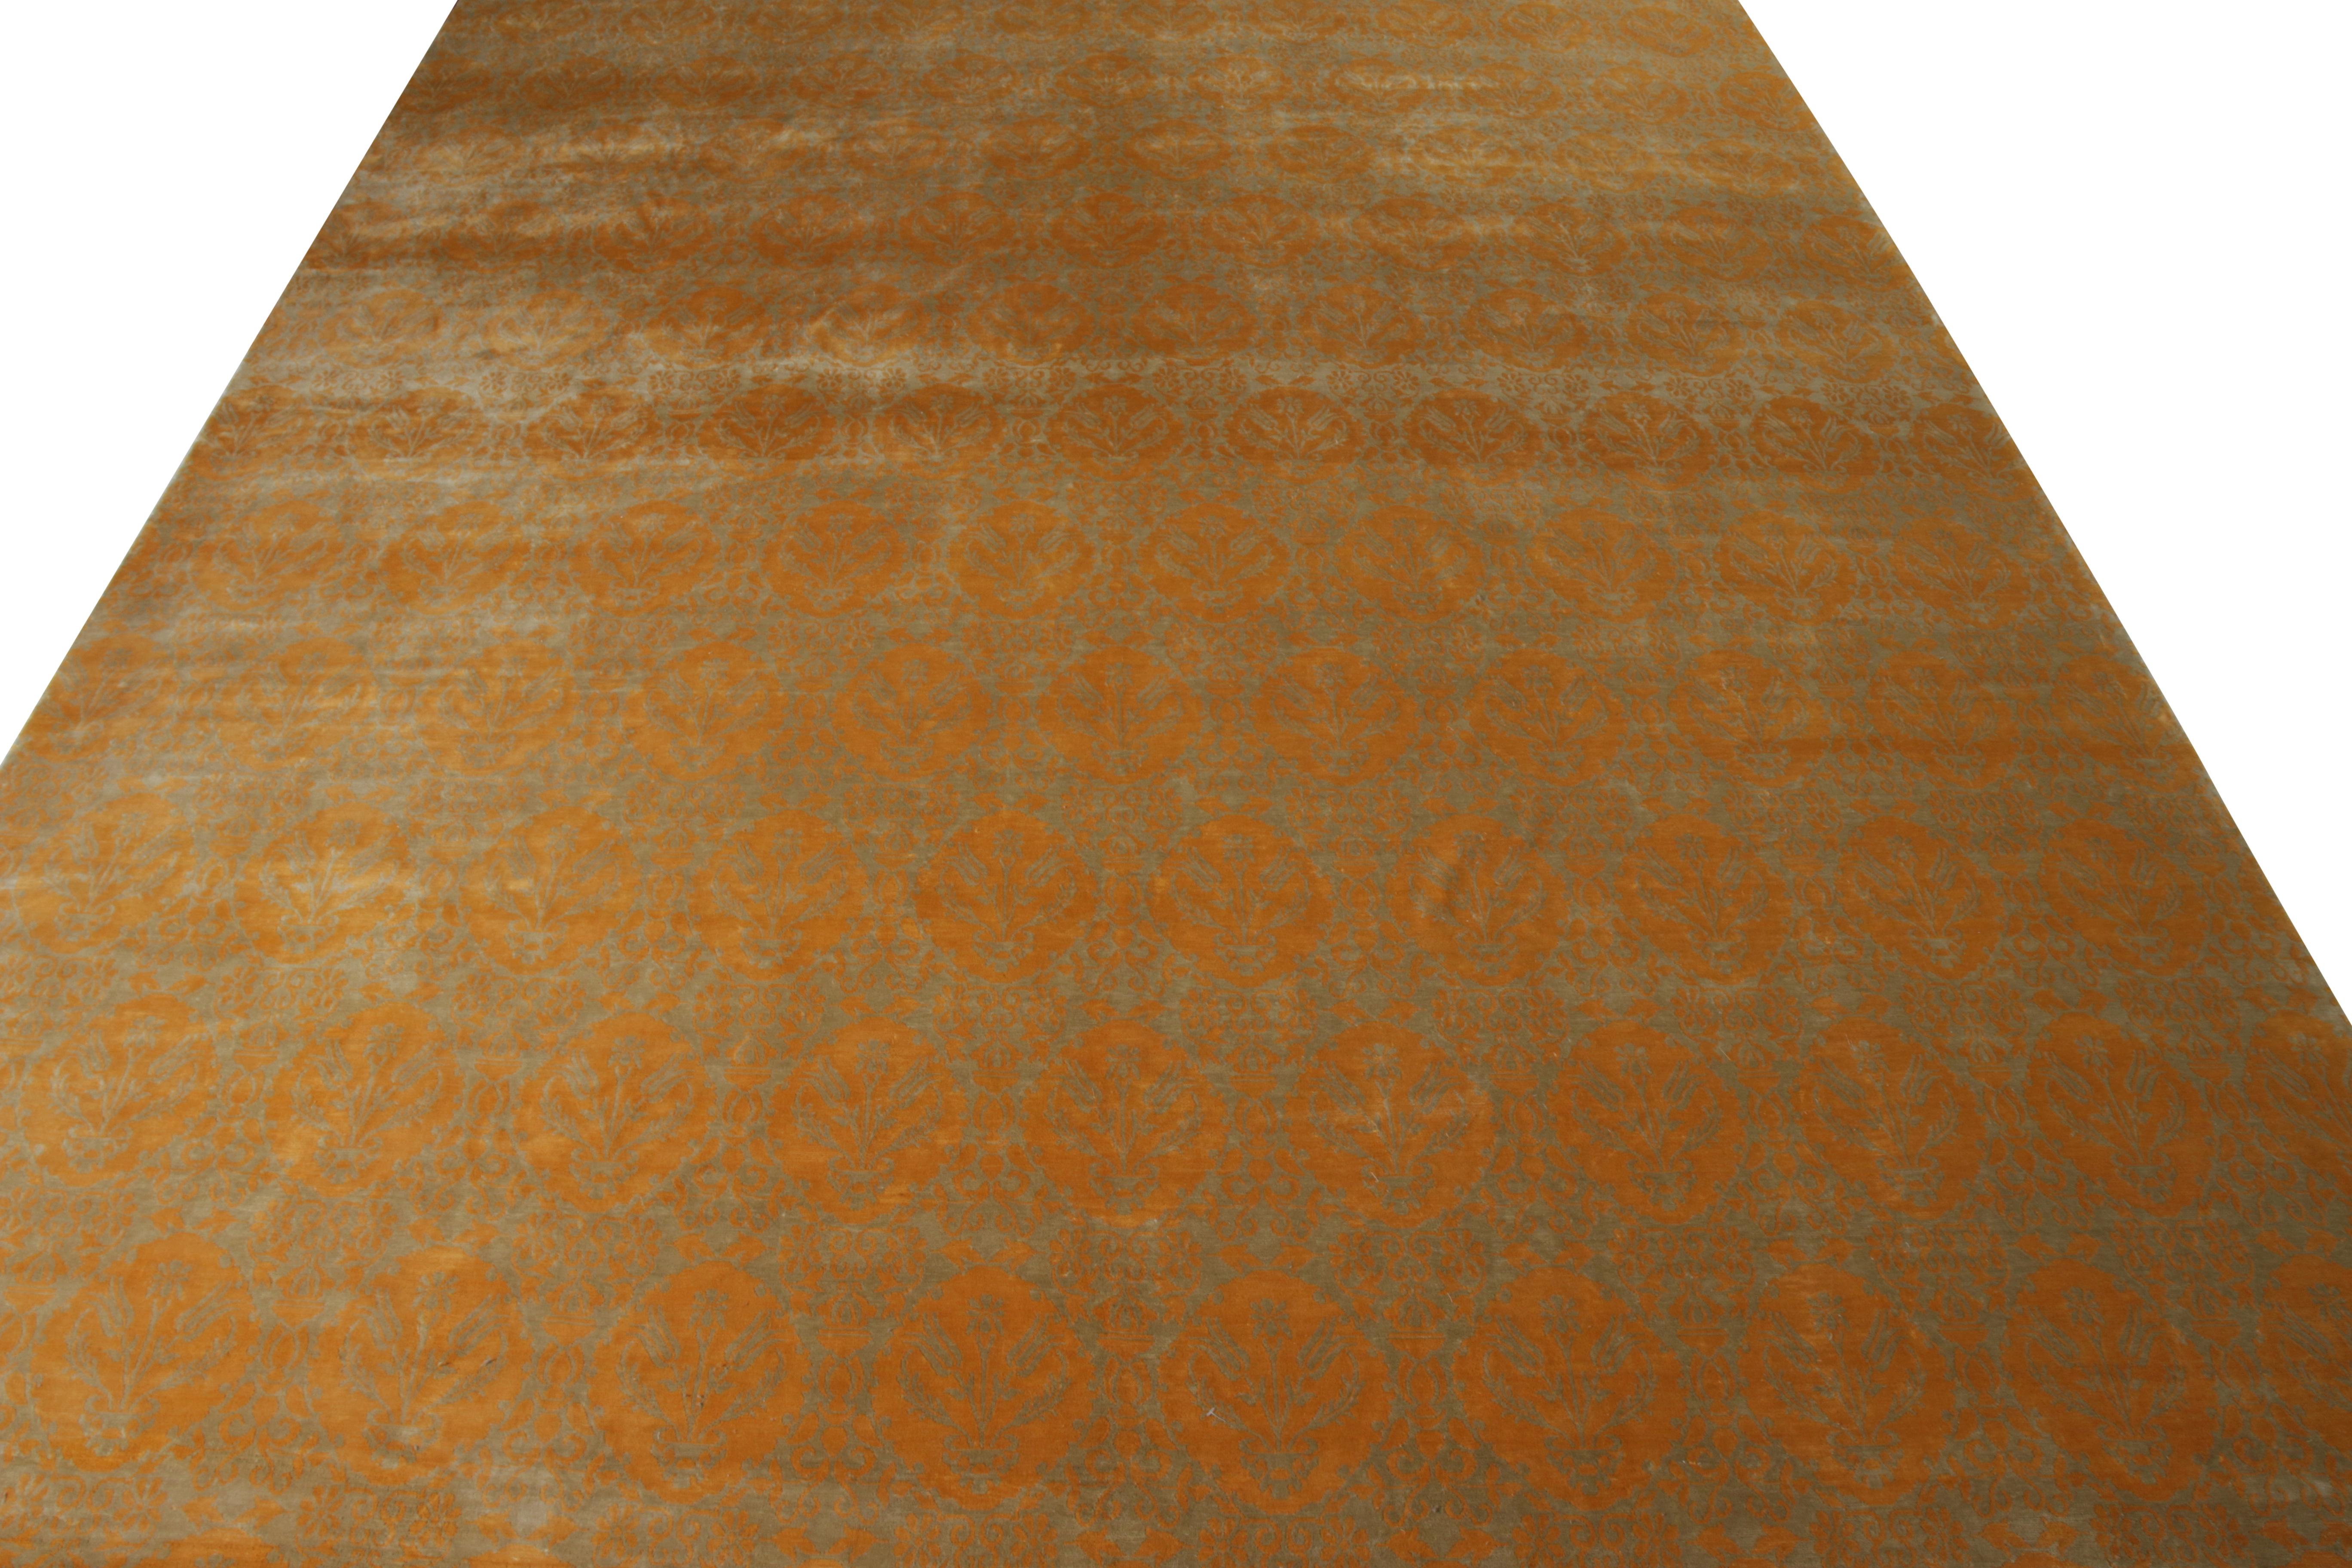 Dieser 11 x 14 große Teppich aus der European Collection'S von Rug & Kilim ist handgeknüpft und besteht aus glänzender Seide, die ein Spiel aus Gold und subtilen Grüntönen ergänzt. Er ist ein Beispiel für eine moderne Adaption des Medici-Musters in